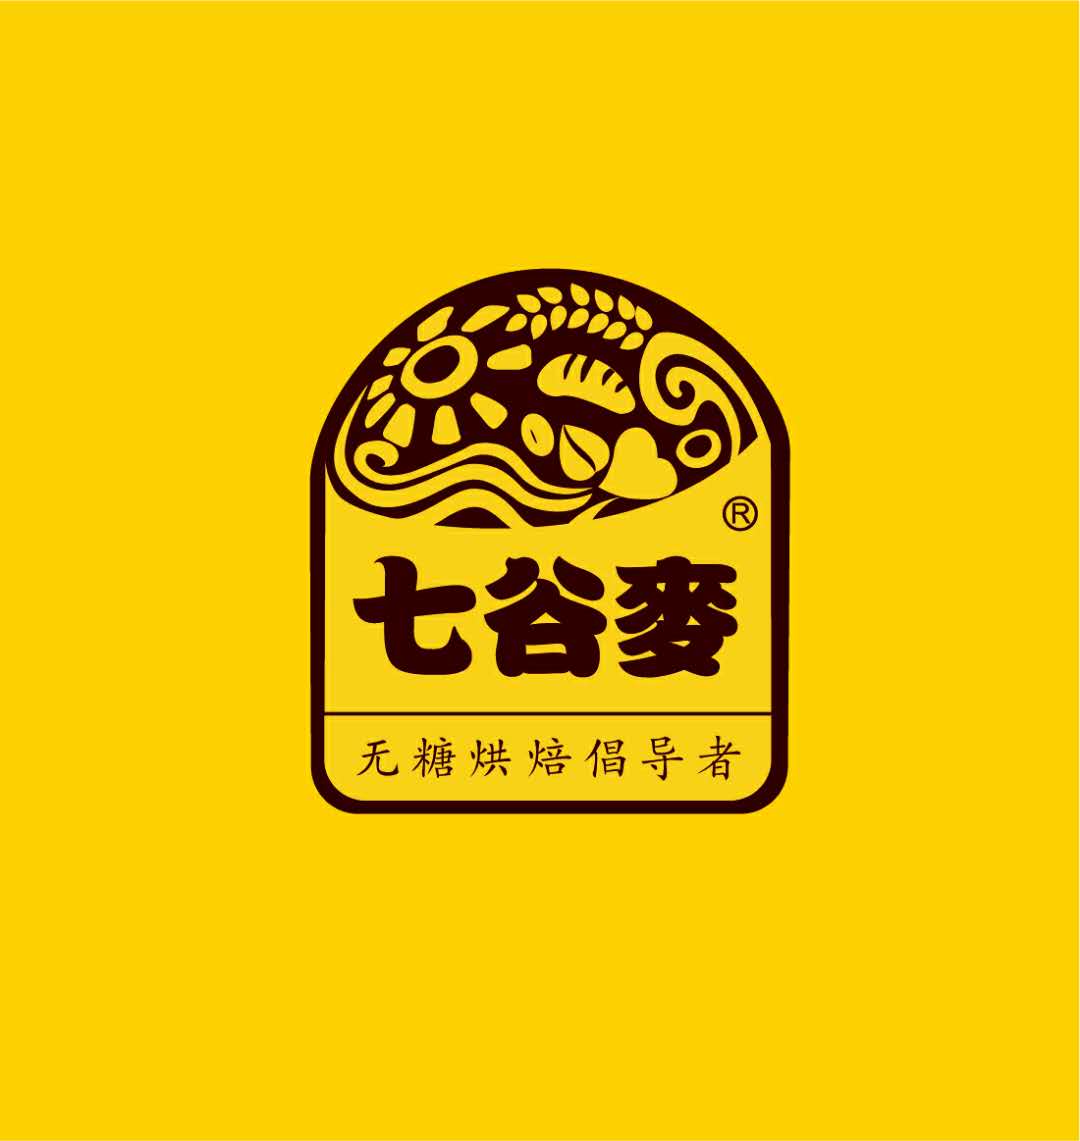 七谷麦食品旗舰店